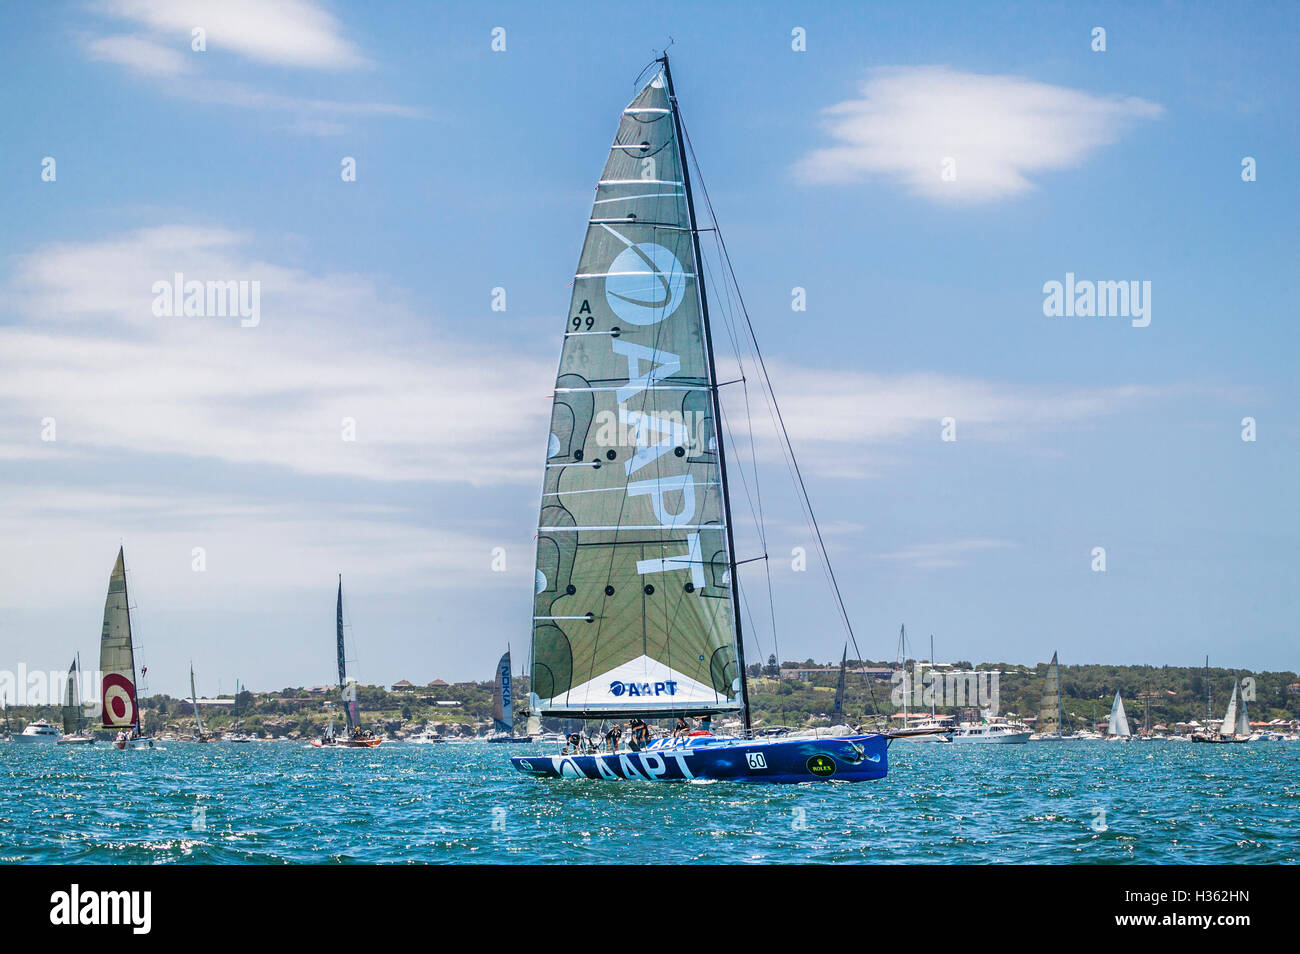 L'Australie, NSW, Sydney Harbour, Maxi Yacht AAPT préparer pour le début de la Classique Bluewater Sydney to Hobart Yacht Race Banque D'Images